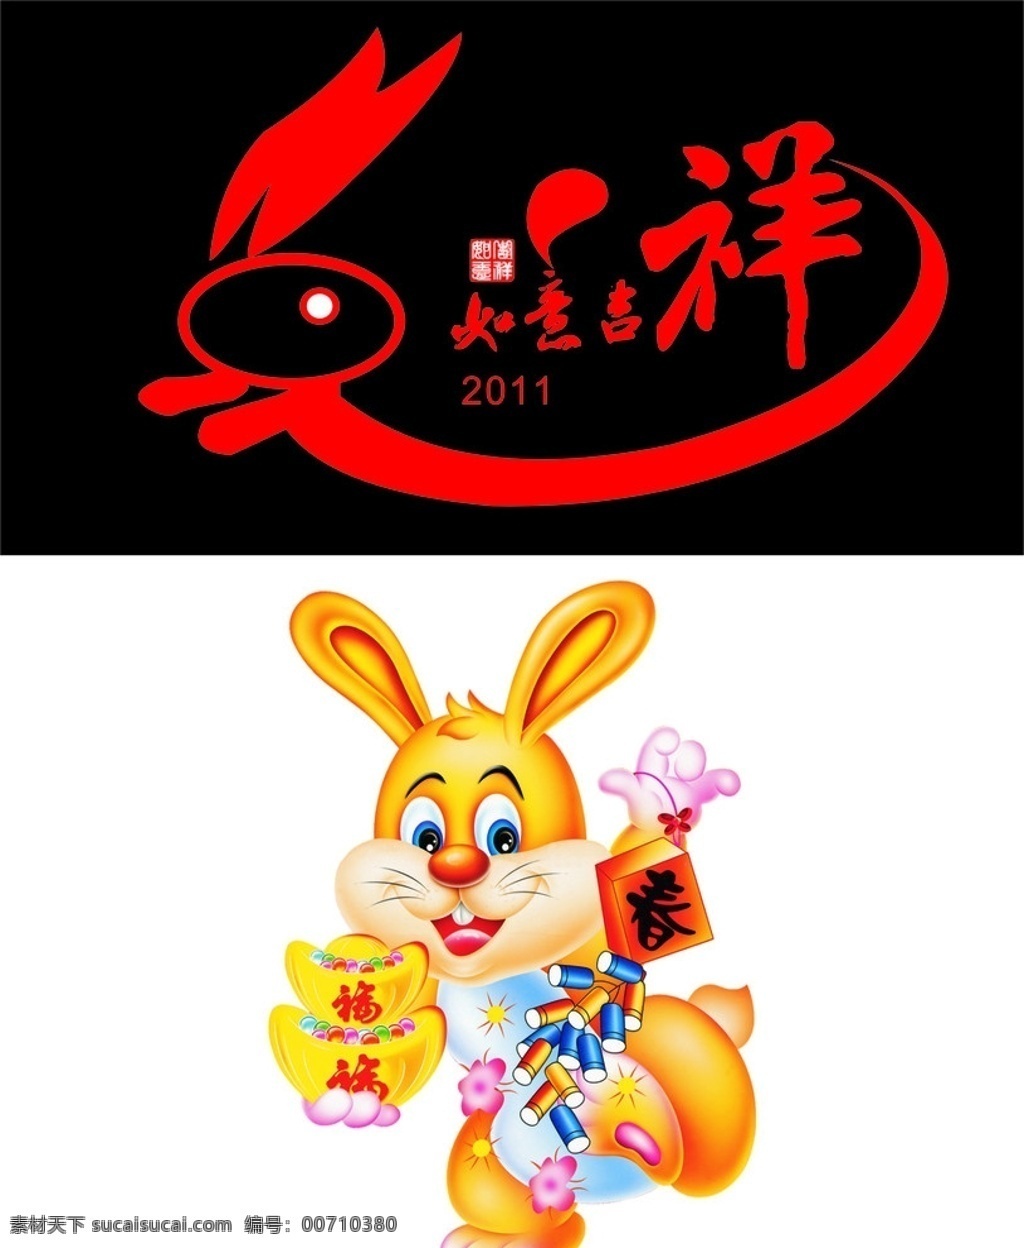 2011兔子 2011年 兔子 矢量 高清 春节 节日素材